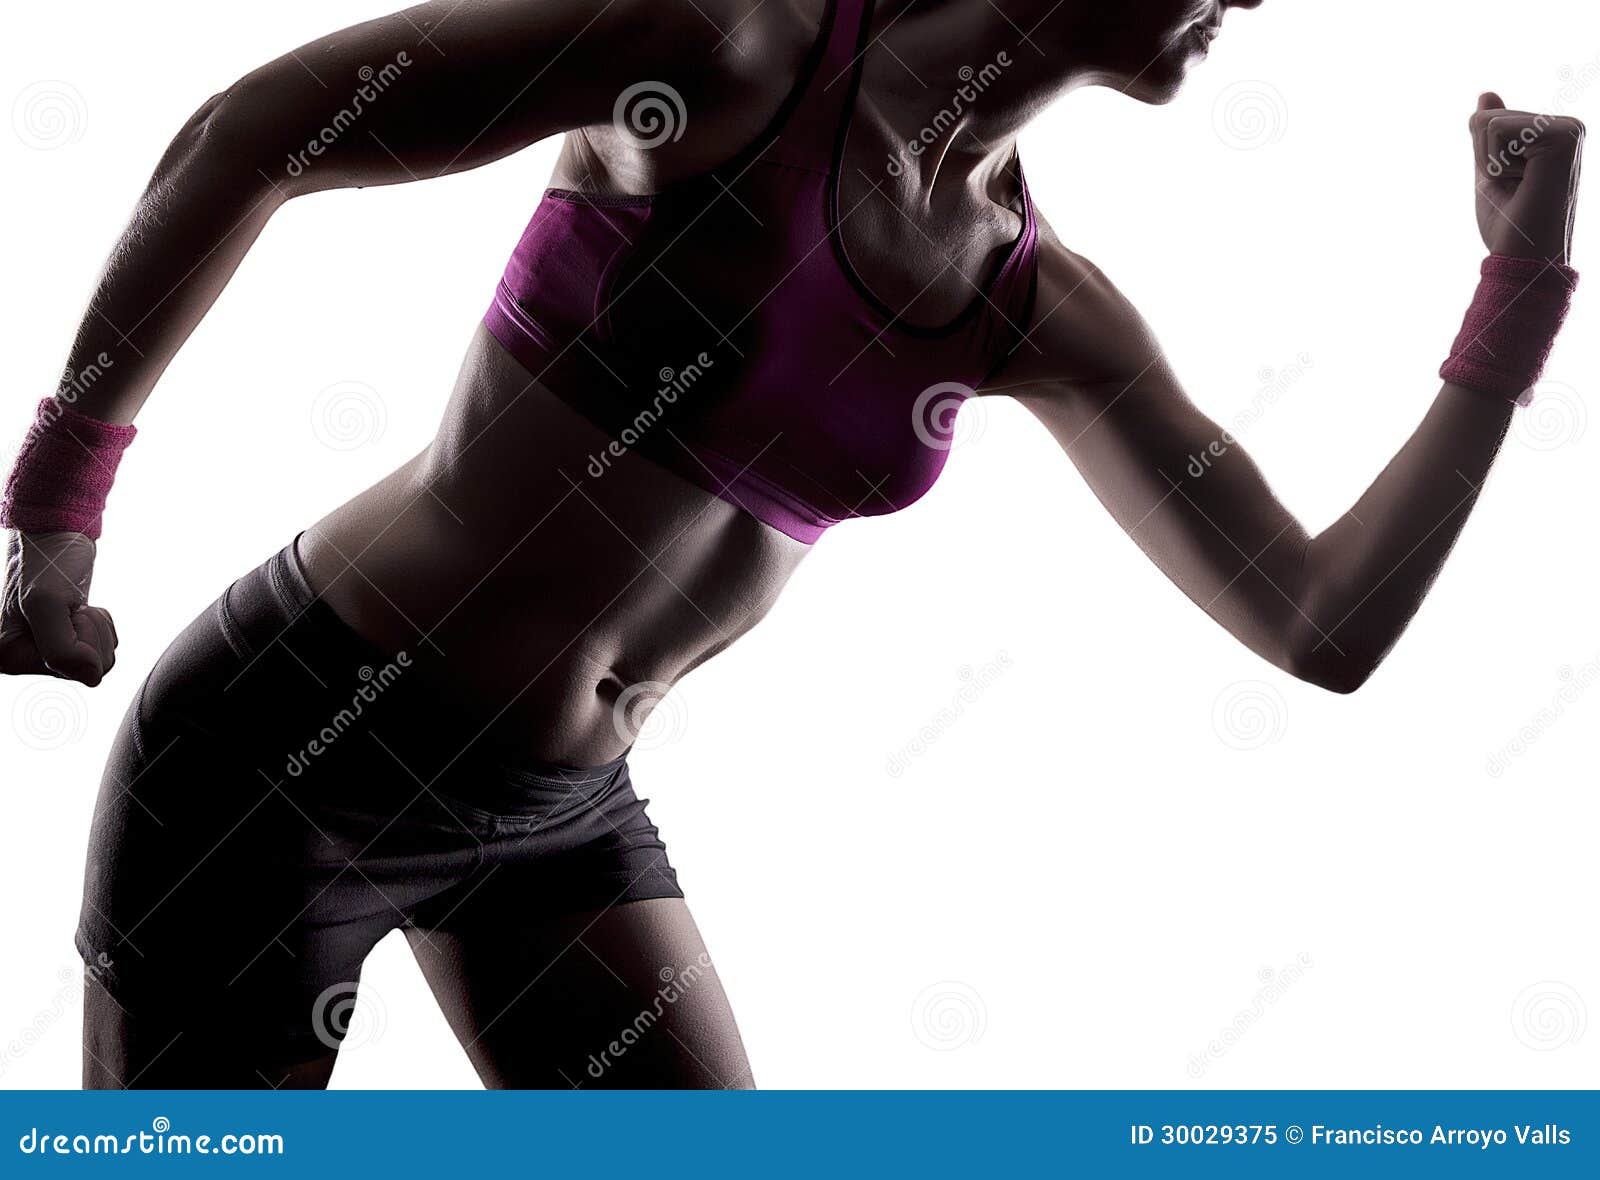 athlete running